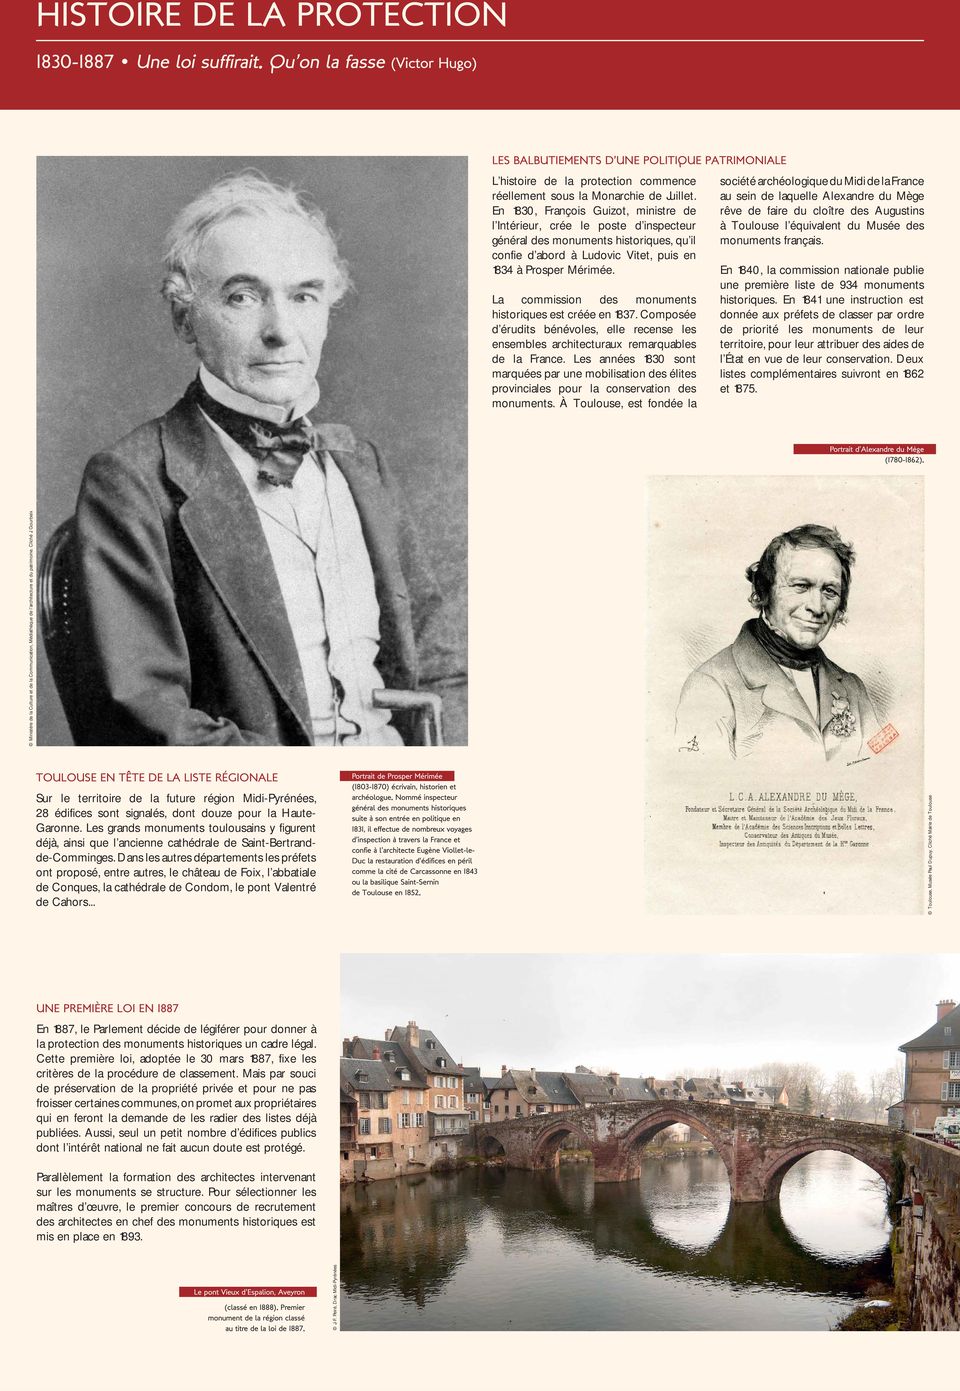 En 1830, François Guizot, ministre de l Intérieur, crée le poste d inspecteur général des monuments historiques, qu il confie d abord à Ludovic Vitet, puis en 1834 à Prosper Mérimée.